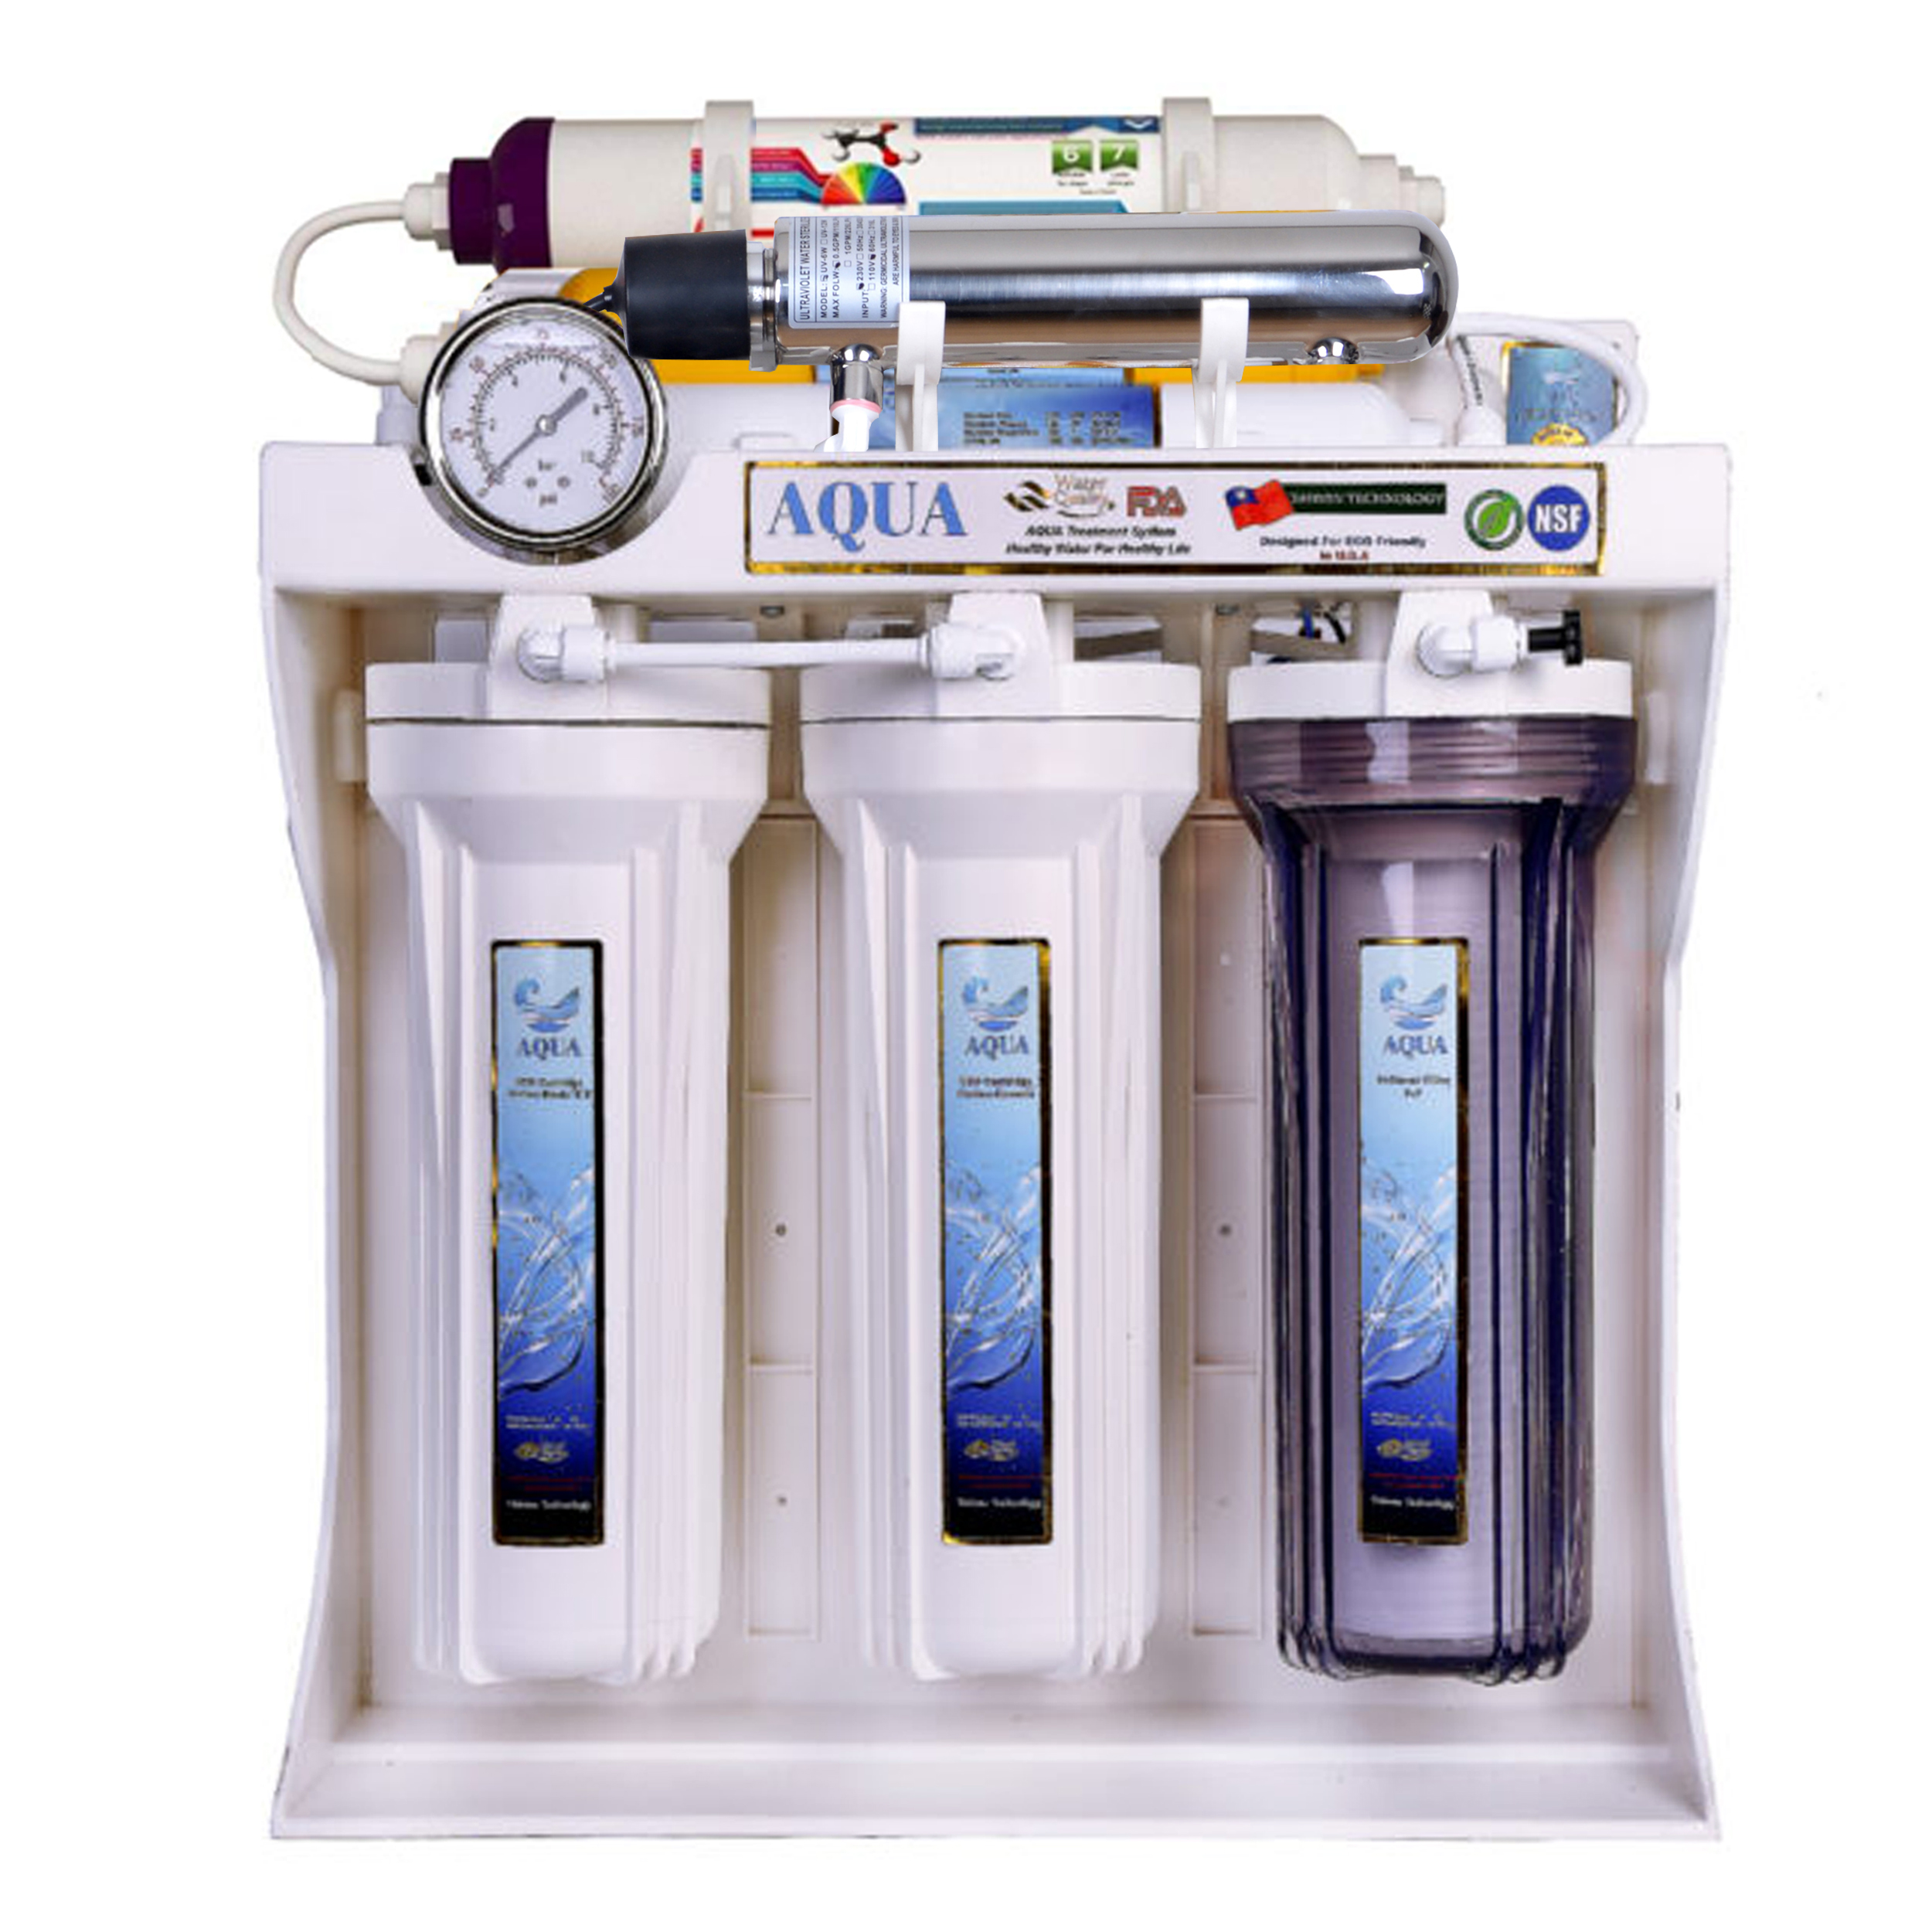 نقد و بررسی دستگاه تصفیه کننده آب آکوا مدل jw08-UV به همراه فیلتر تصفیه کننده آب مدل 3s مجموعه 3 عددی توسط خریداران